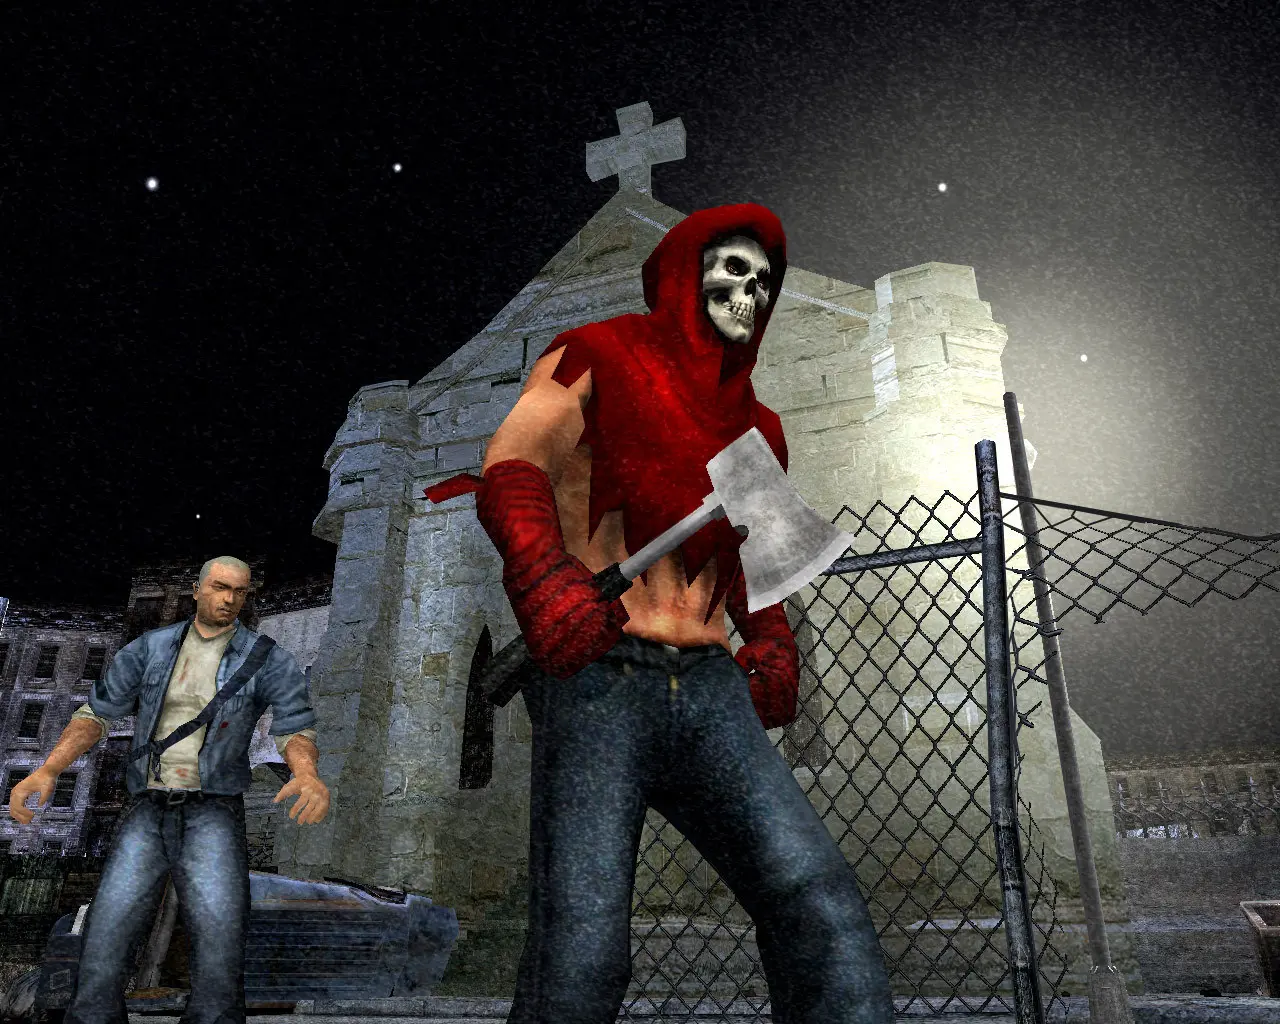 دانلودبازی Manhunt 1 Enhanced Edition برای کامپیوتر PC